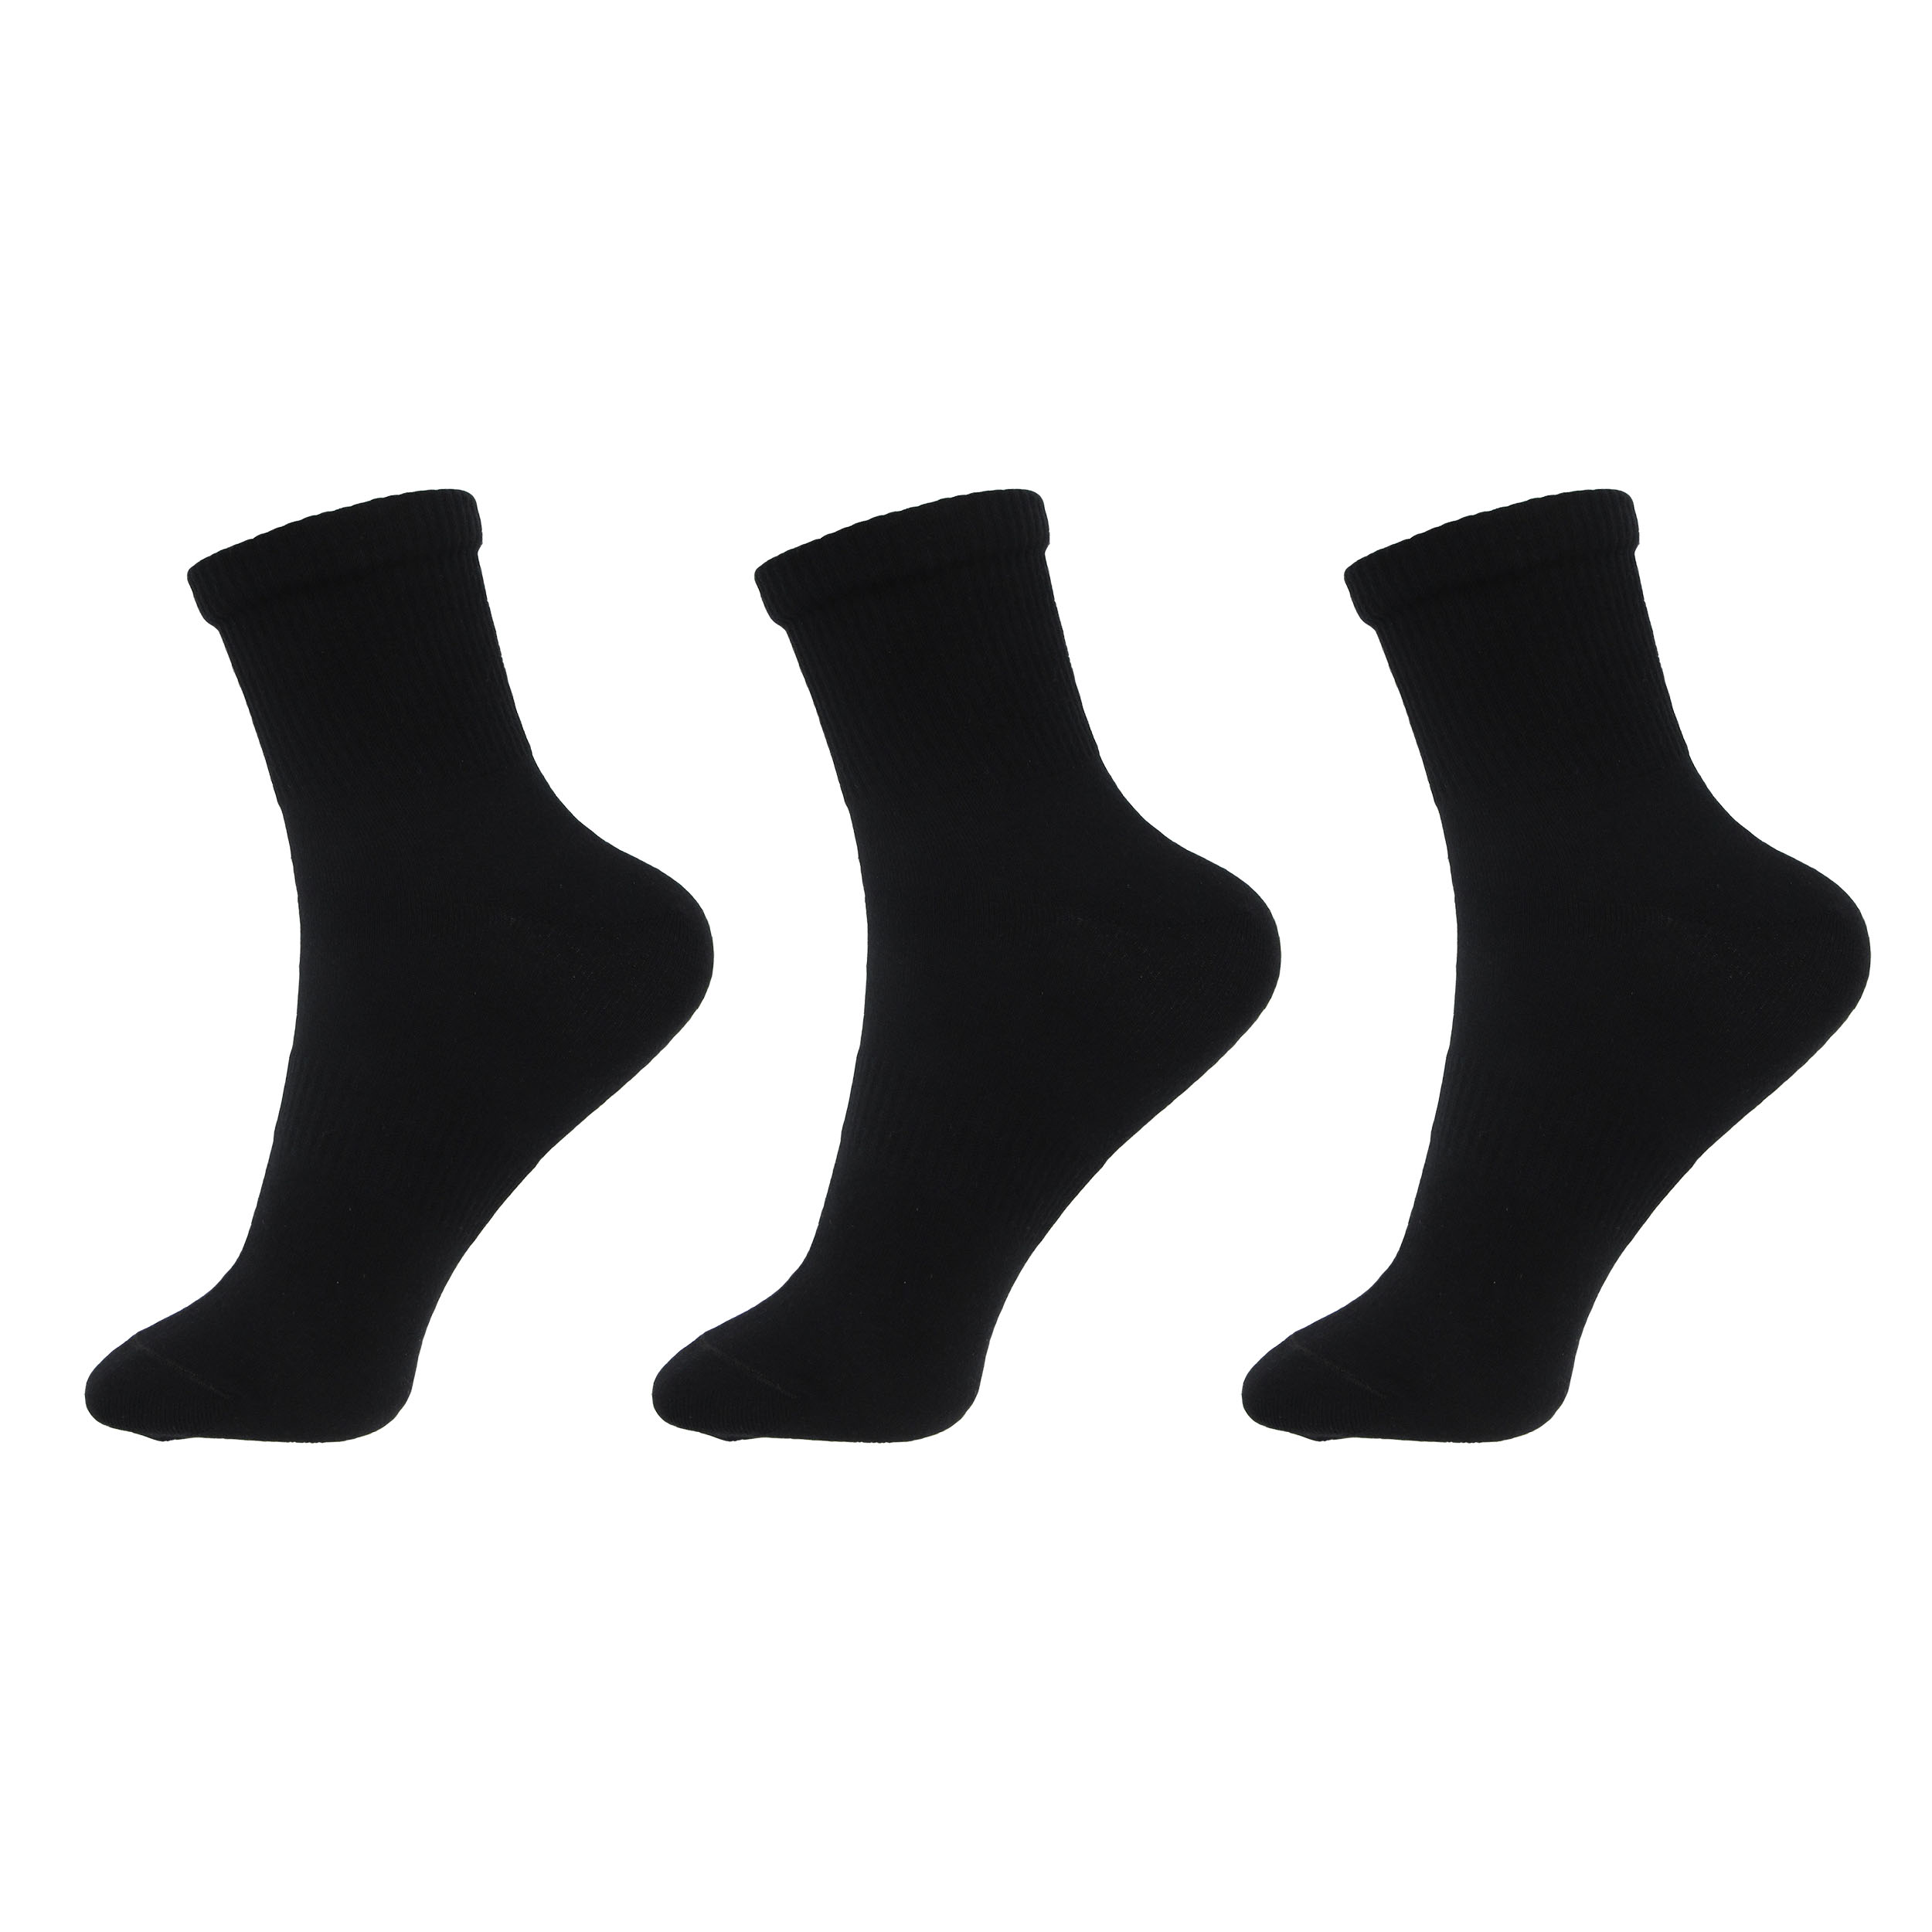 جوراب ورزشی مردانه ادیب مدل اسپرت کش انگلیسی کد MNSPT رنگ مشکی بسته 3 عددی